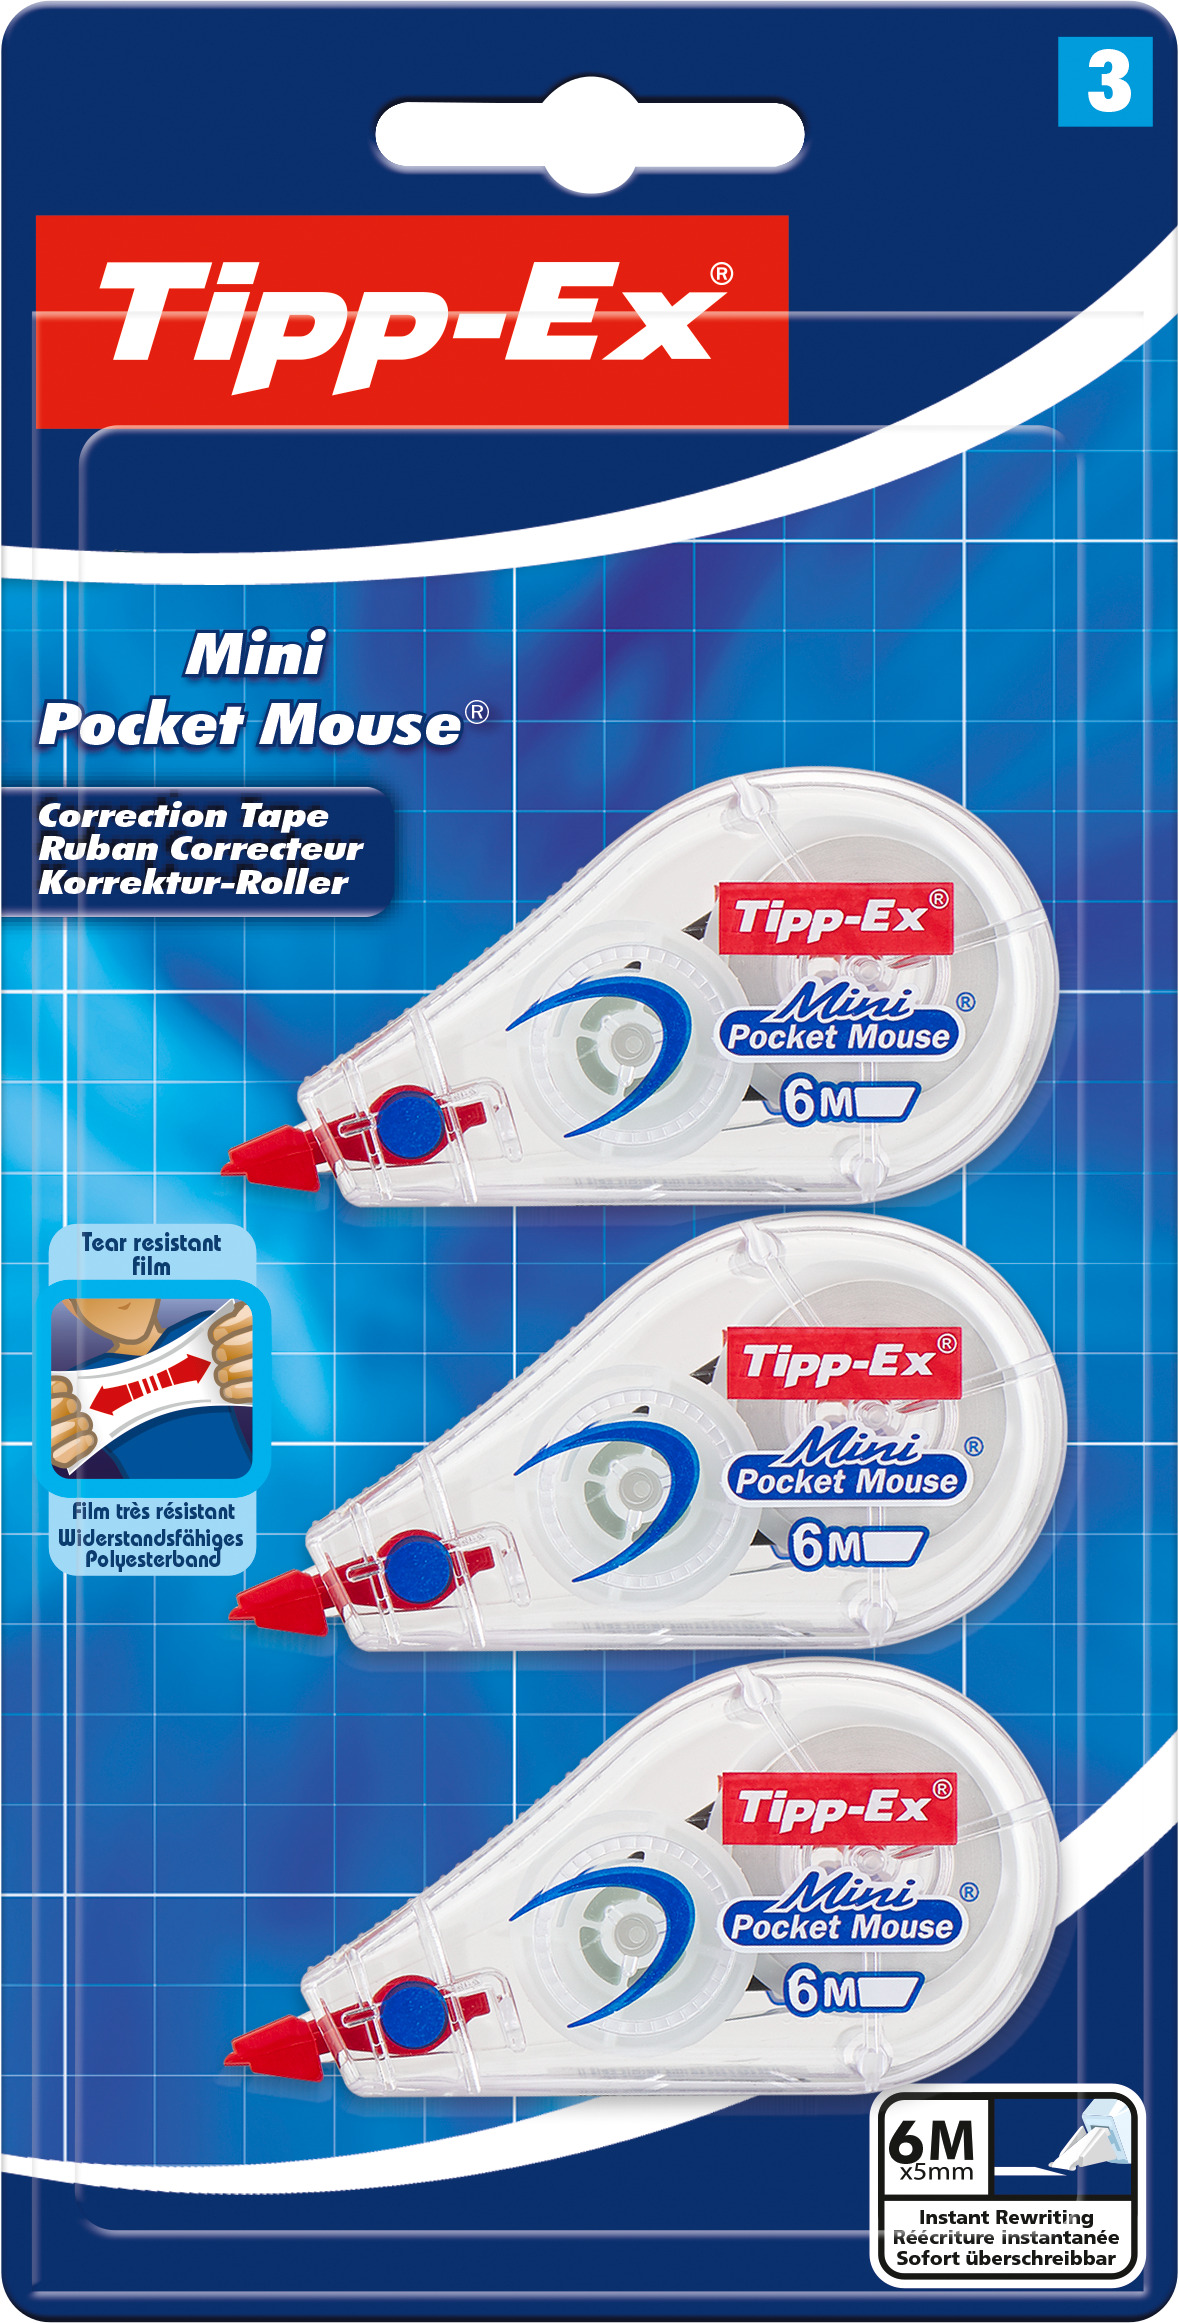 Blister de 3 mini pocket mouse rubans correcteurs - 6 m tipp-ex